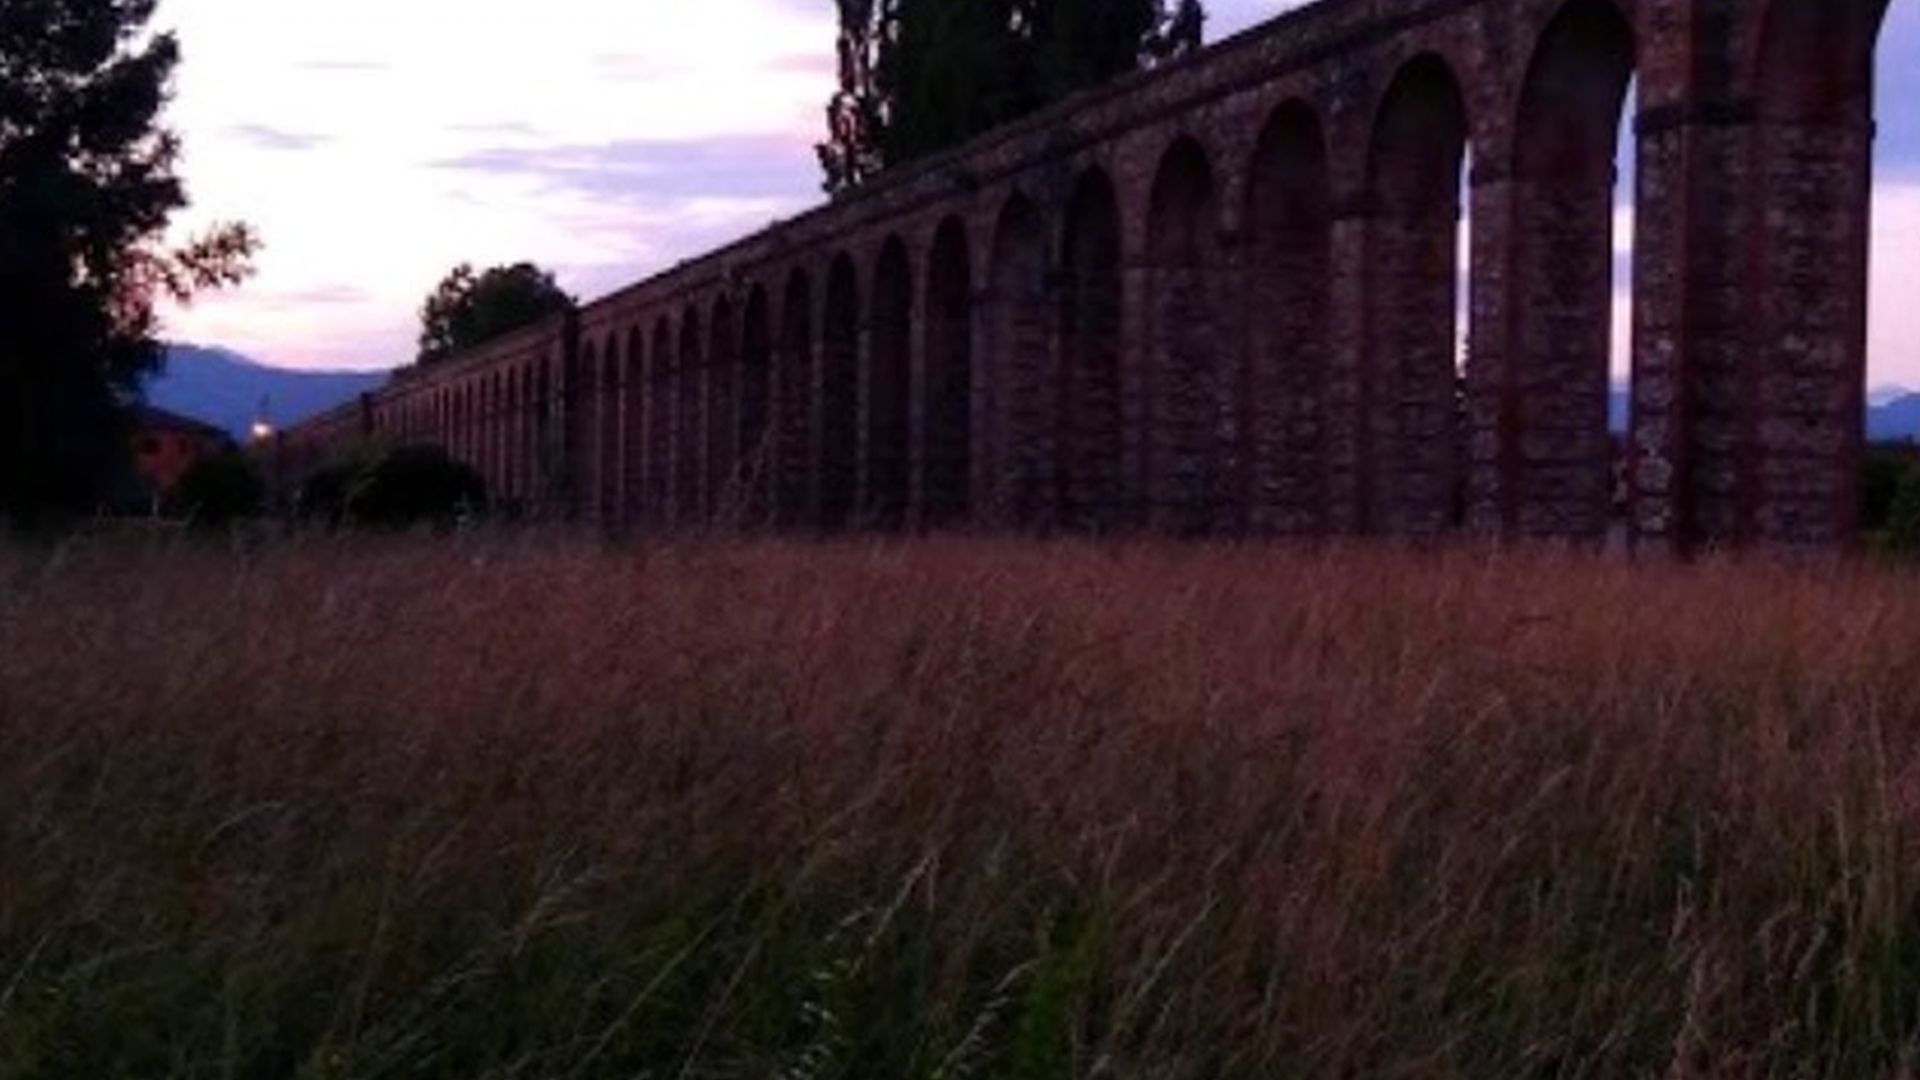 monumental aqueduct in the evening